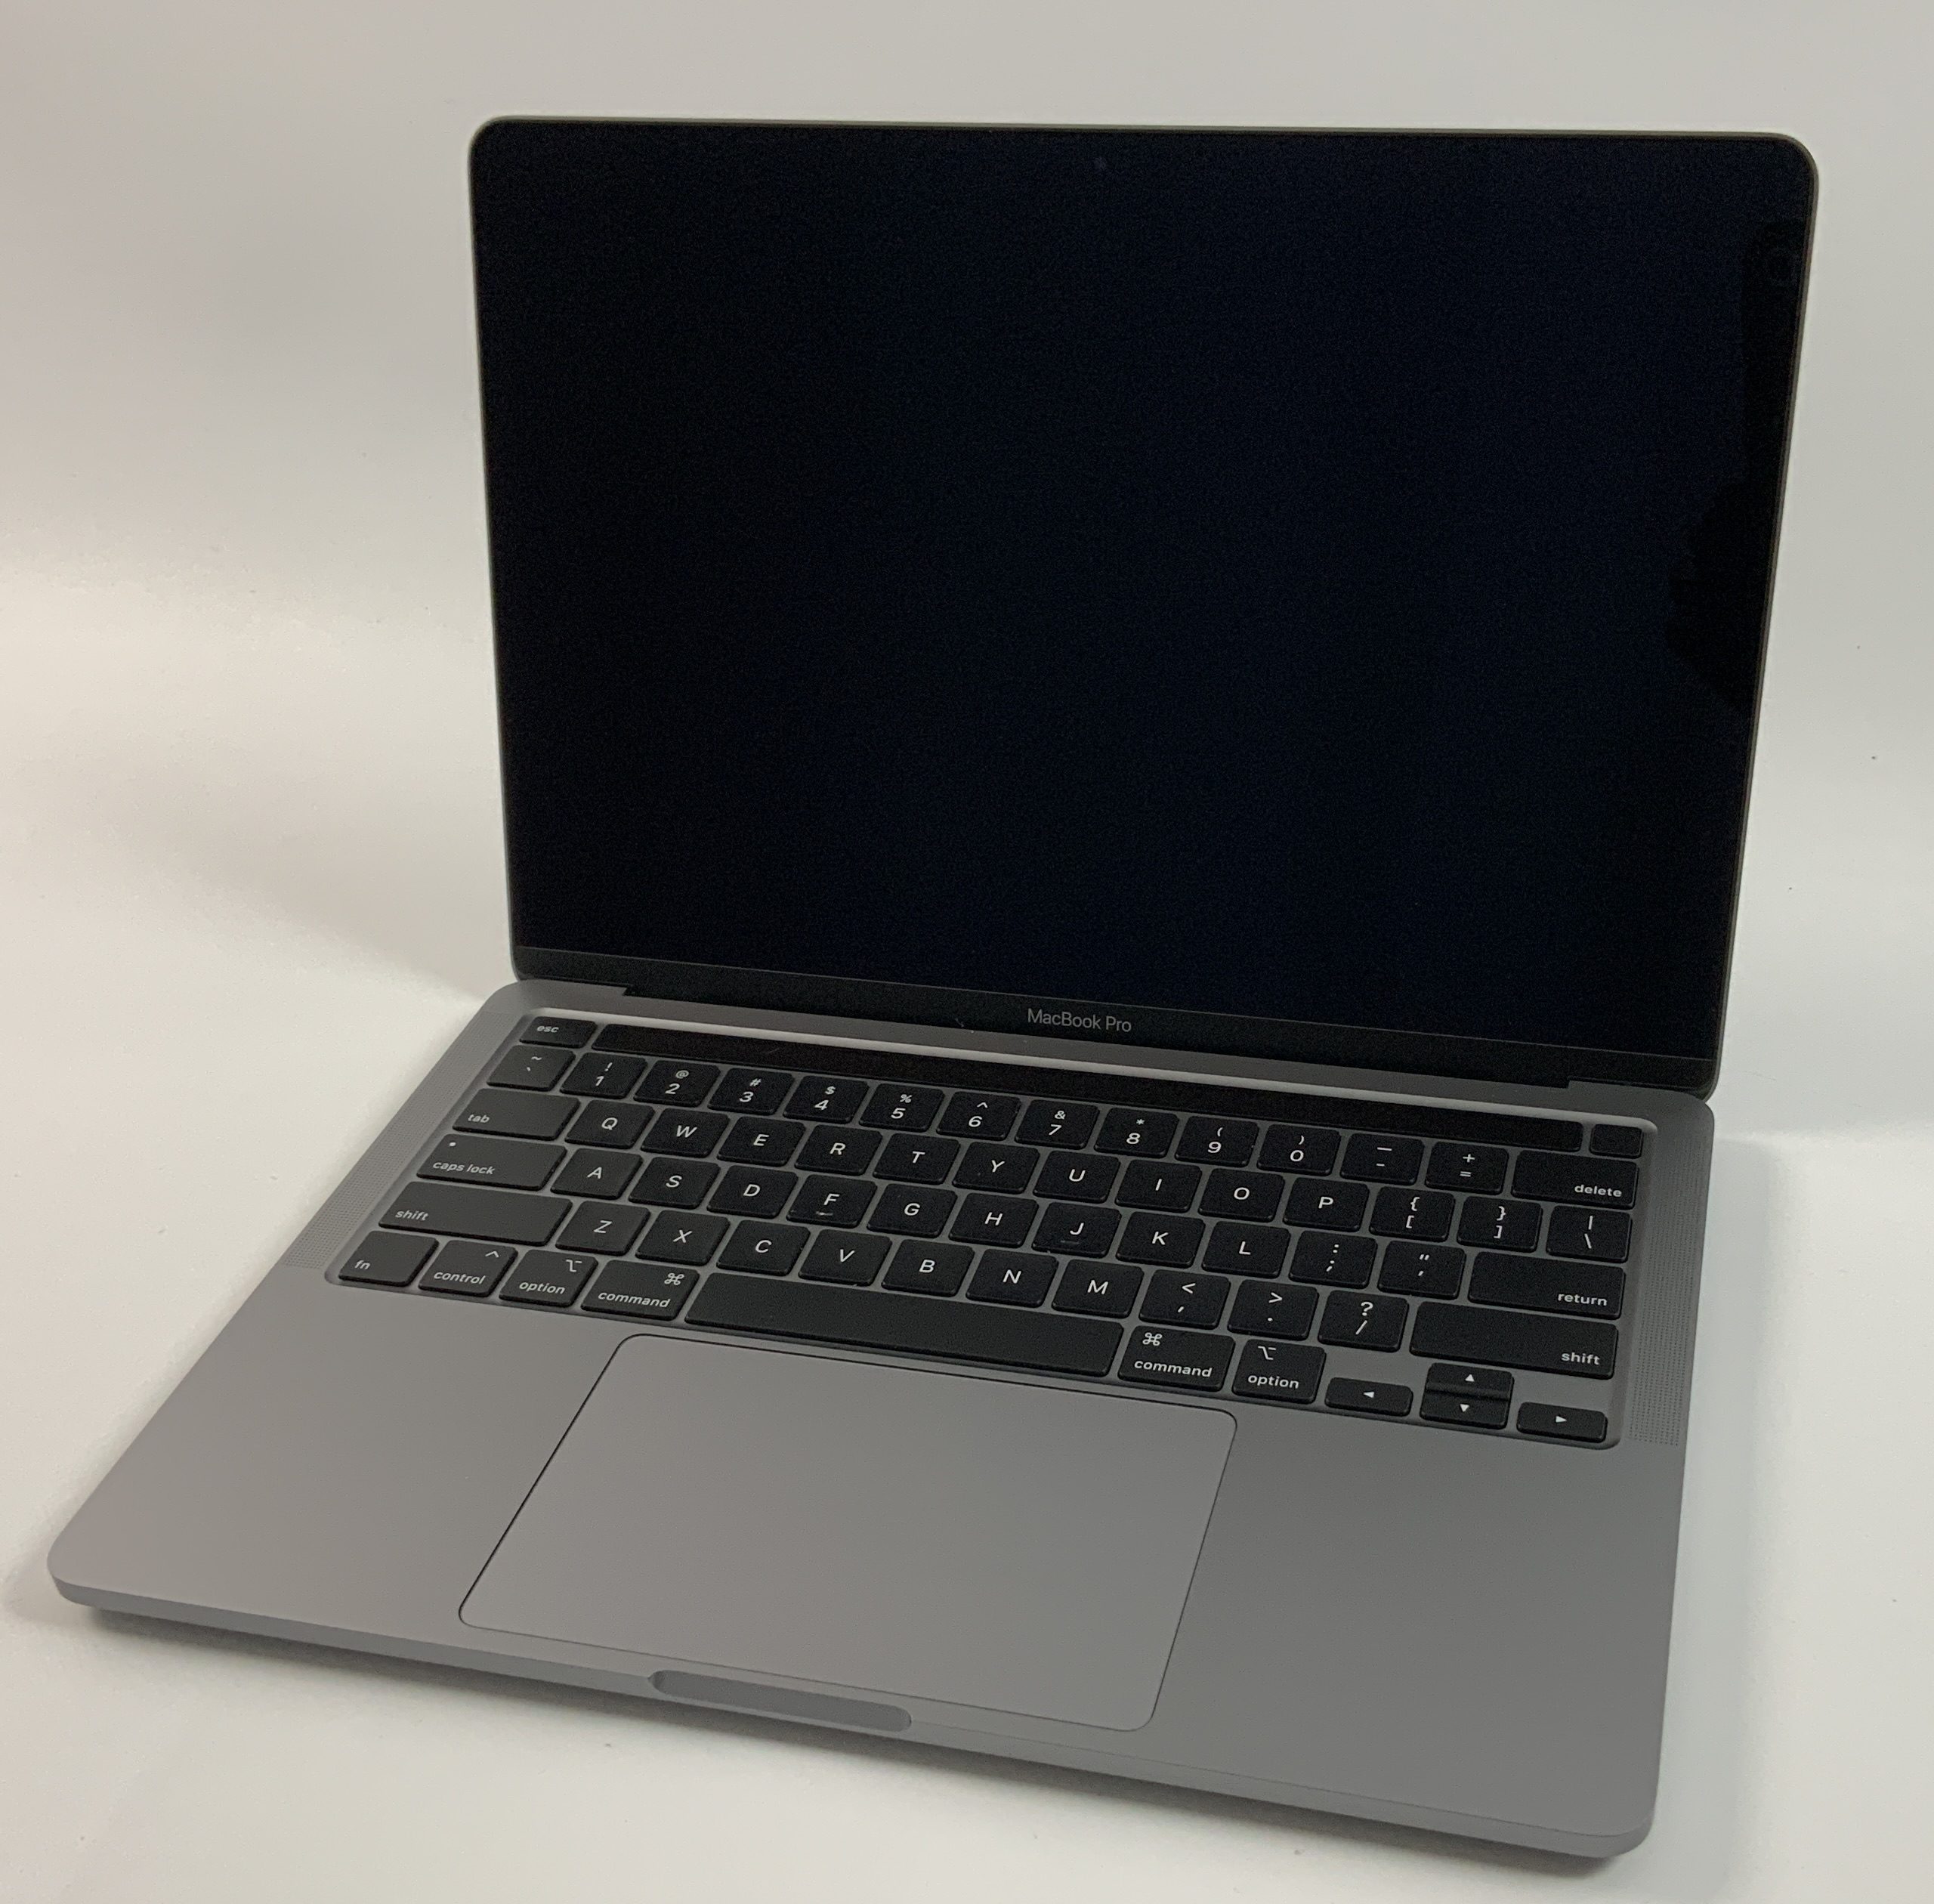 MacBook Pro 13" 4TBT Mid 2020 (Intel Quad-Core i5 2.0 GHz 16 GB RAM 512 GB SSD), Space Gray, Intel Quad-Core i5 2.0 GHz, 16 GB RAM, 512 GB SSD, Afbeelding 1